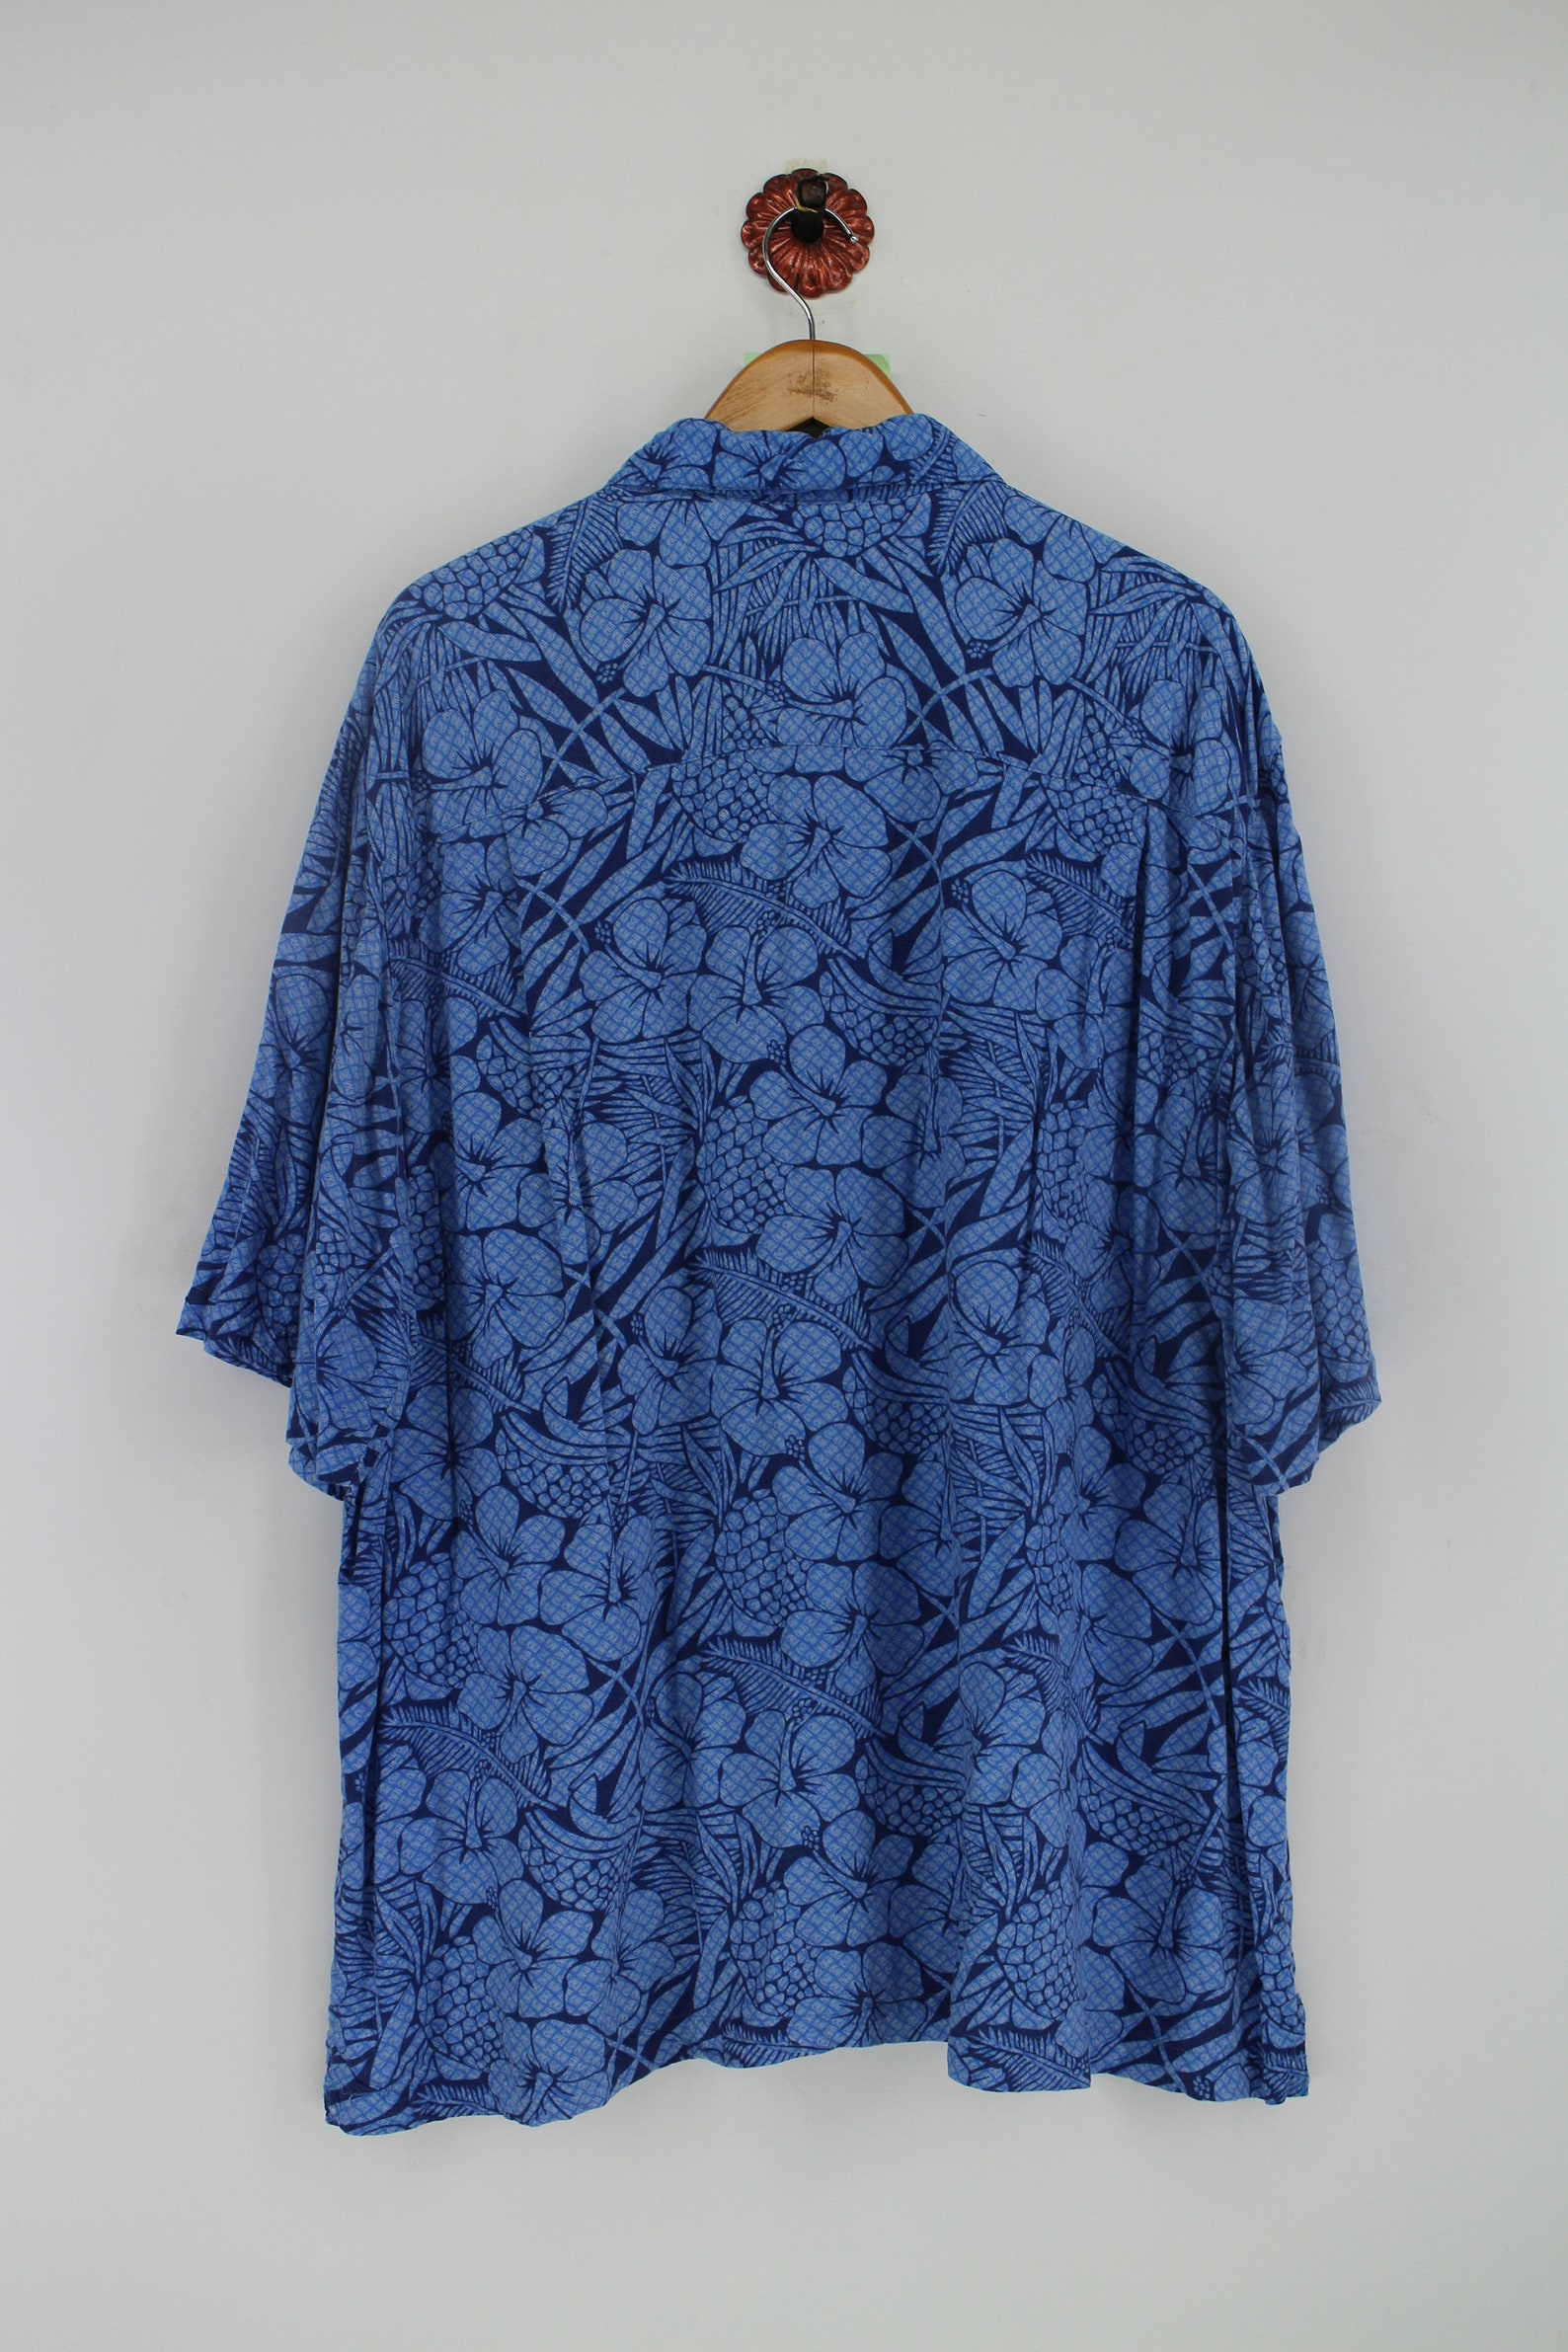 Vintage HAWAIIAN George Rayon Shirt Men XXLarge Abstract | Etsy